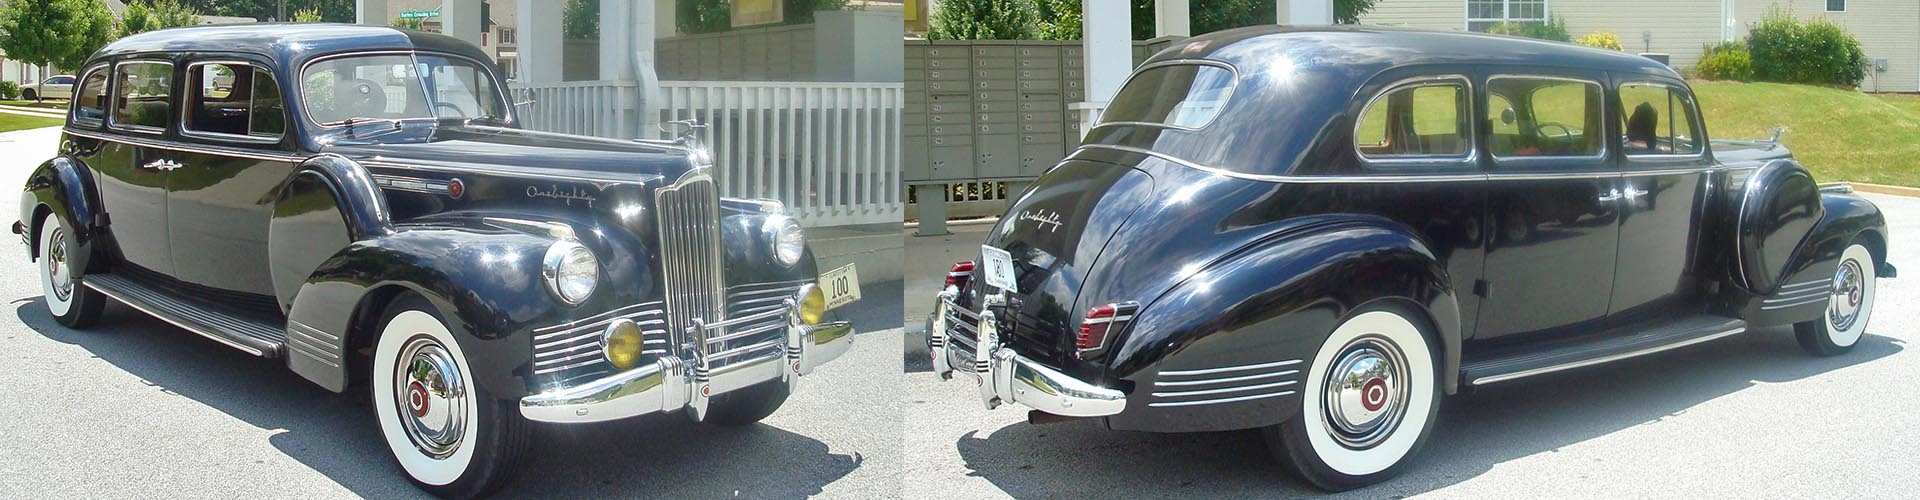 Classic Car Wedding Transportation 1942 Packard Luxury